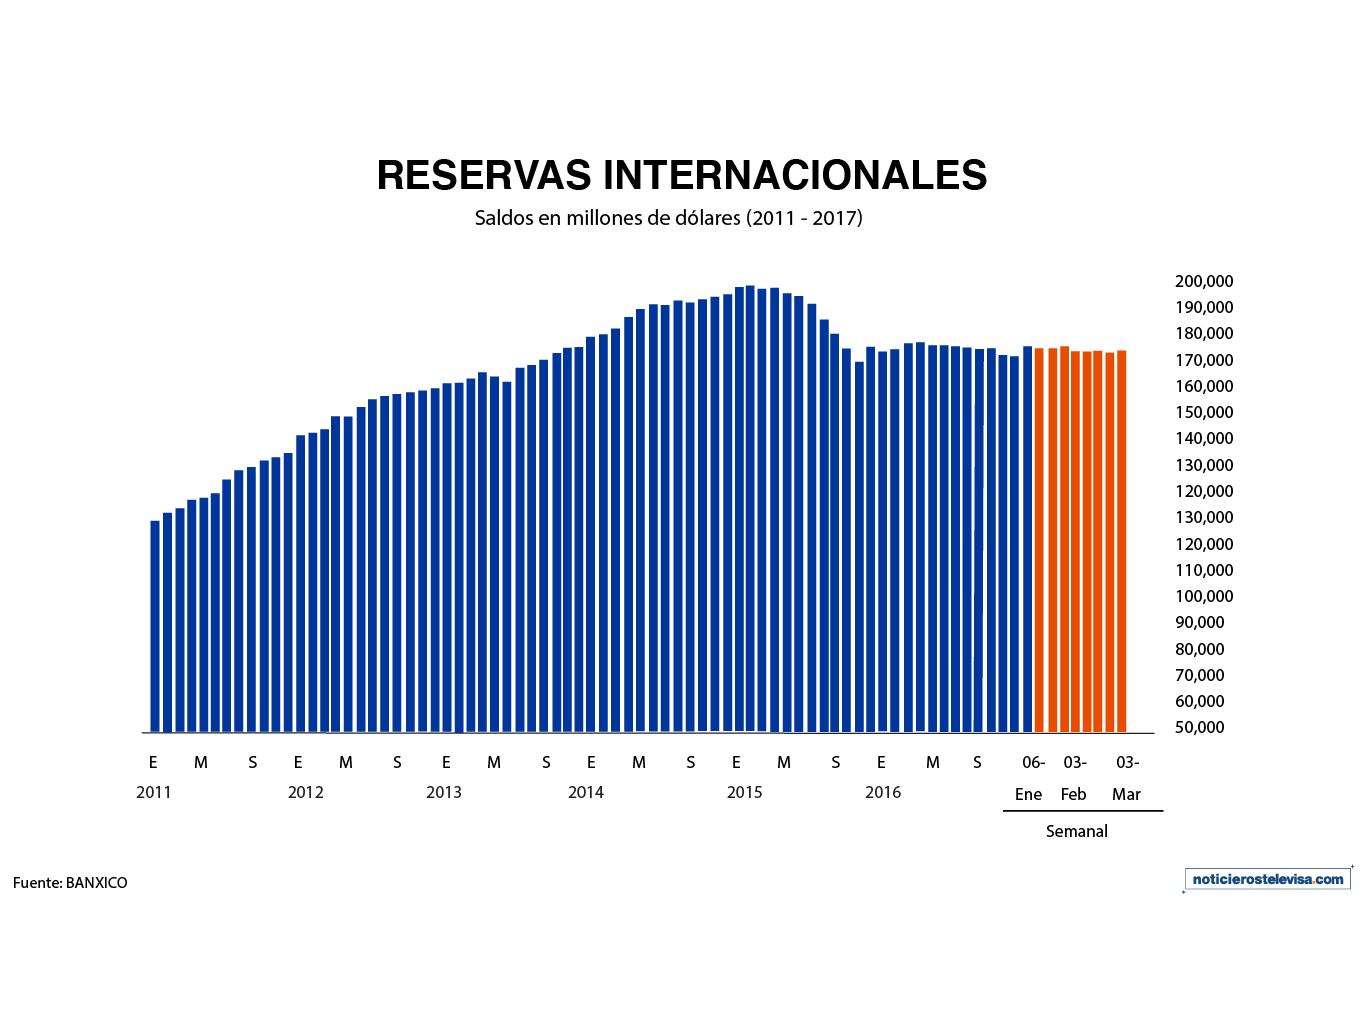 El monto de las reservas internacionales durante la semana que concluyó el 24 de febrero fue de 175,145 mdd